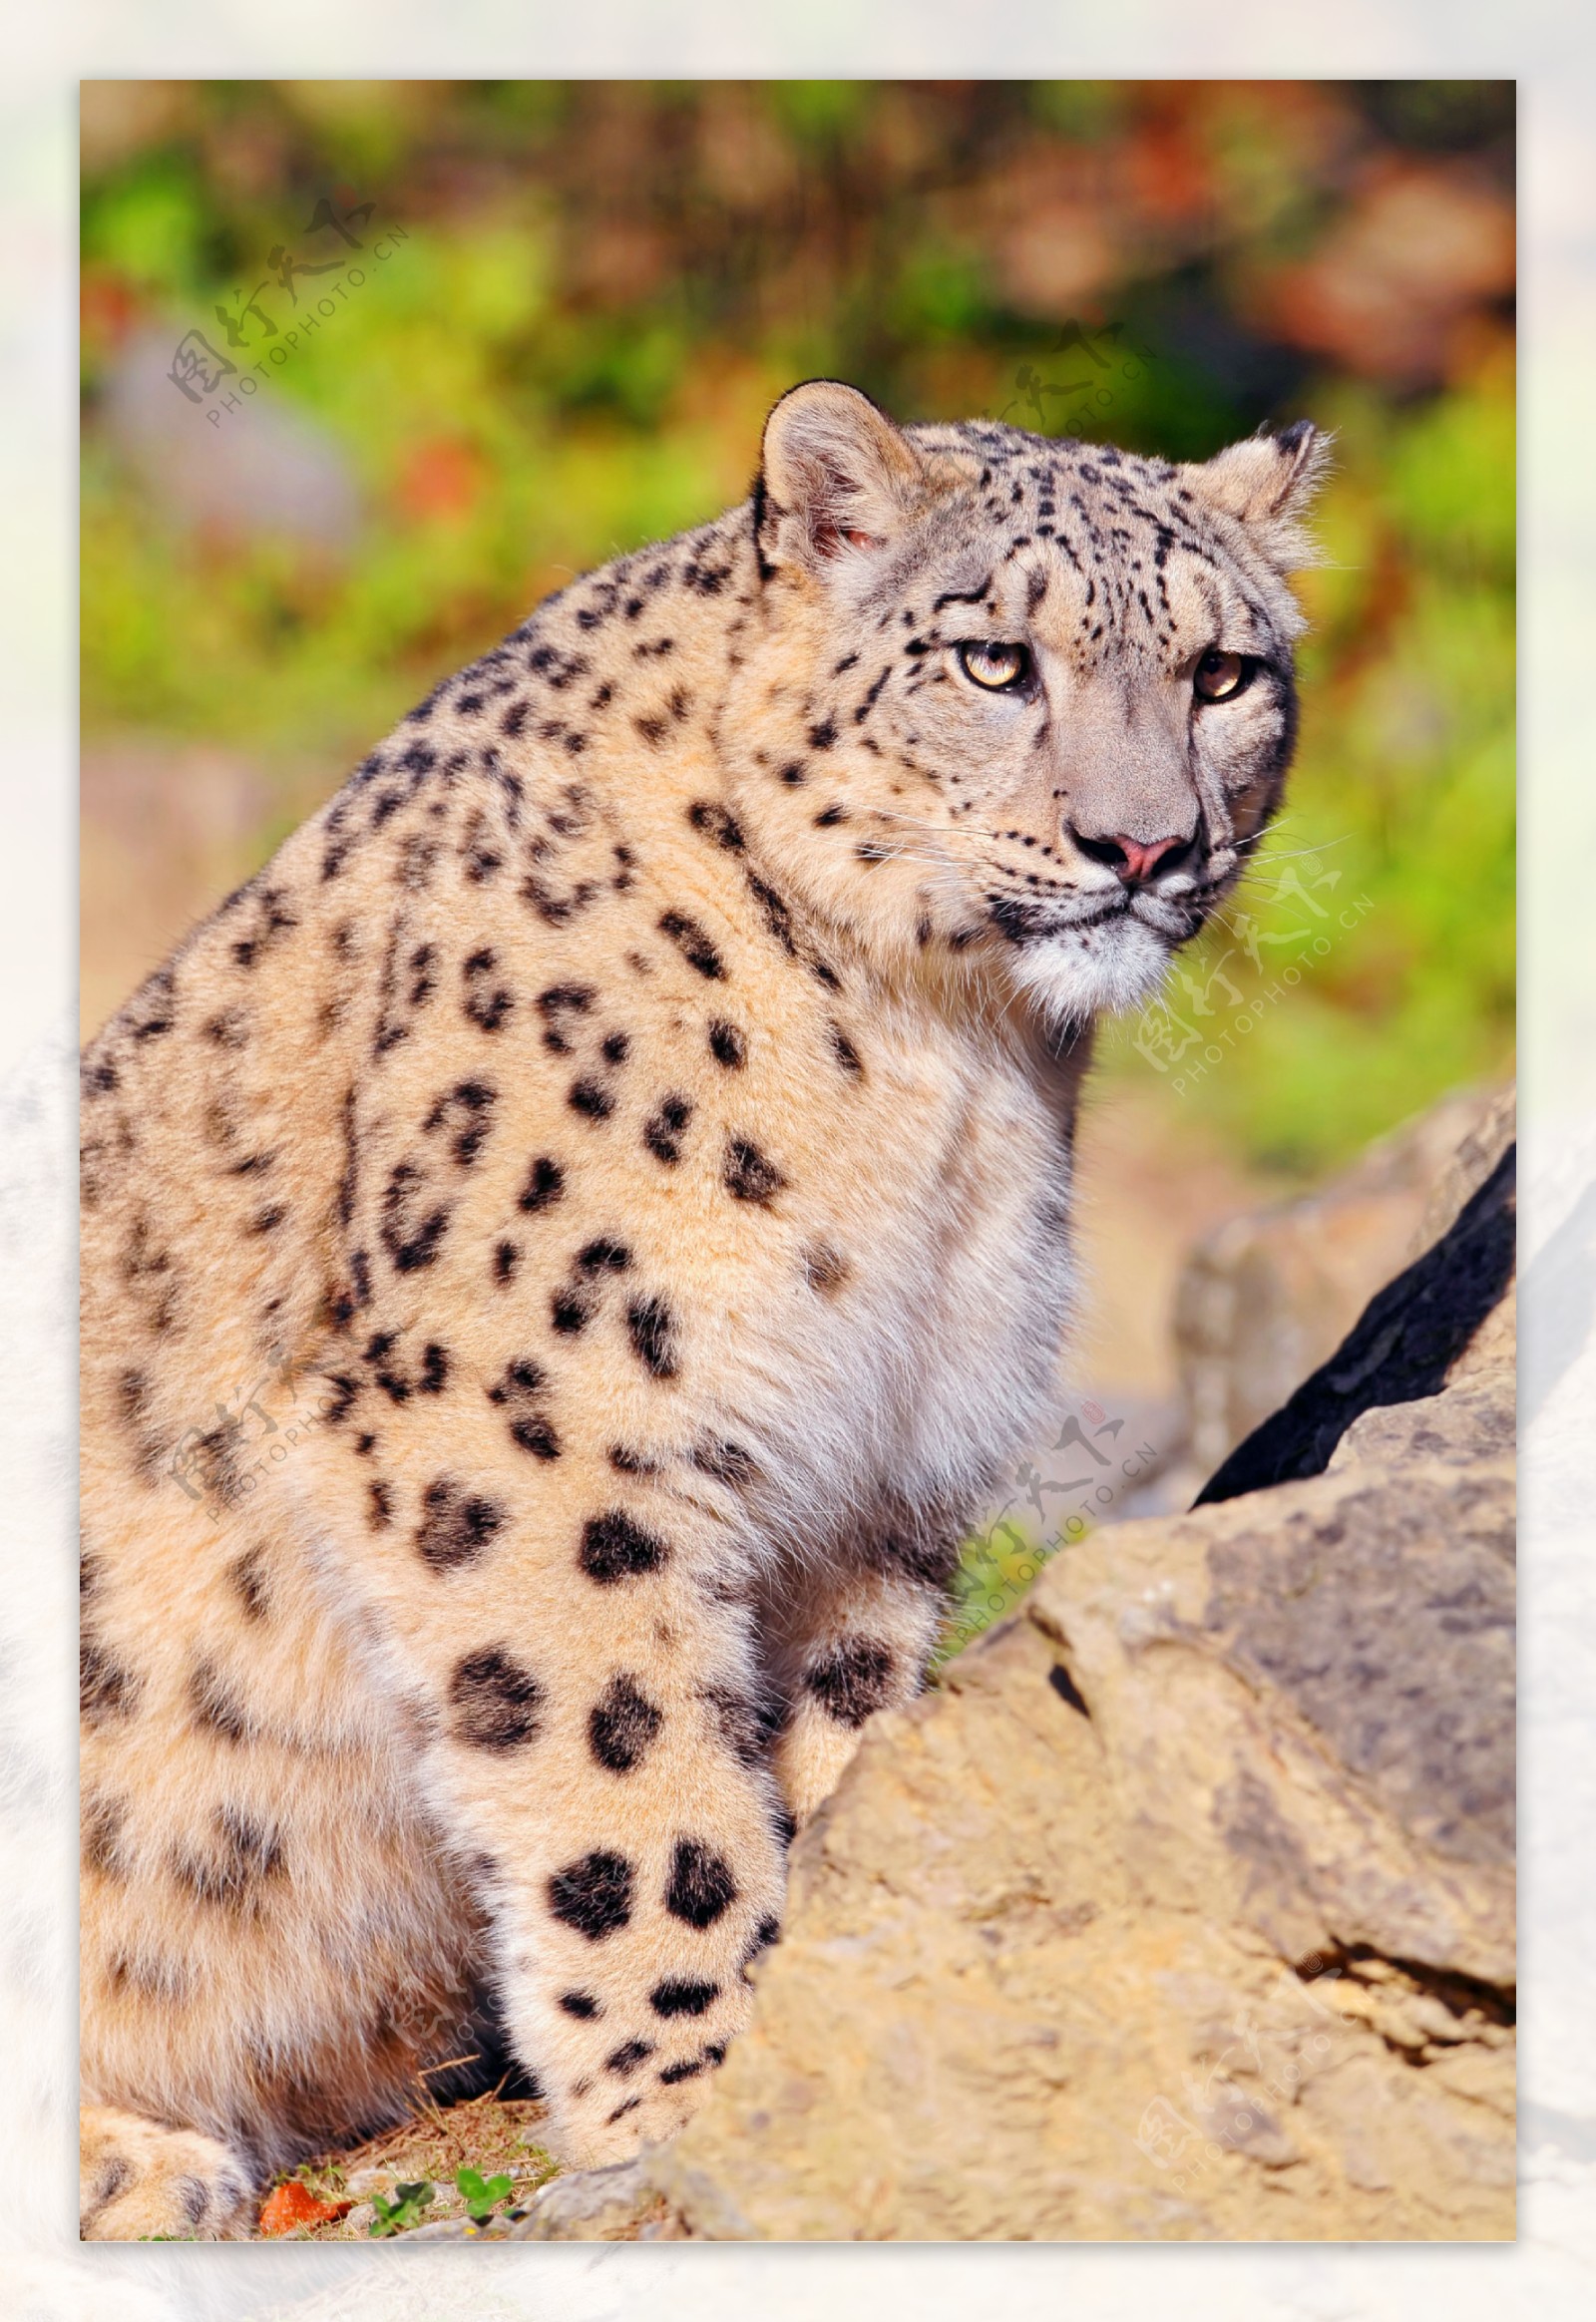 壁纸 可爱的雪豹宝宝 2560x1920 HD 高清壁纸, 图片, 照片